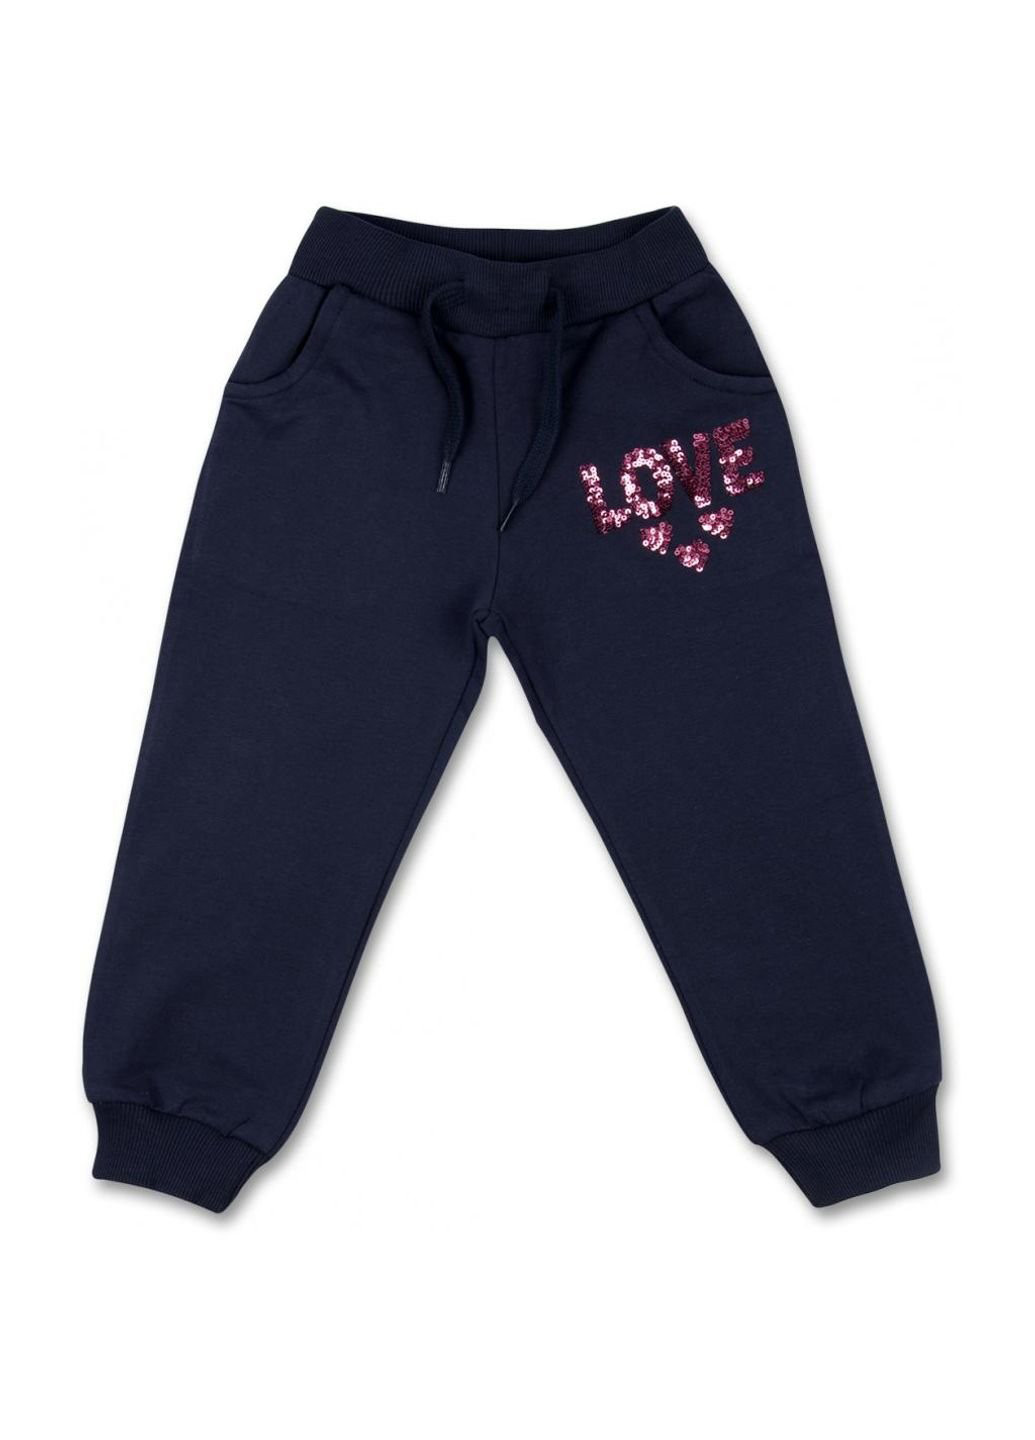 Коралловый набор детской одежды кофта с брюками с сердечком из пайеток (8271-92g-pink) Breeze